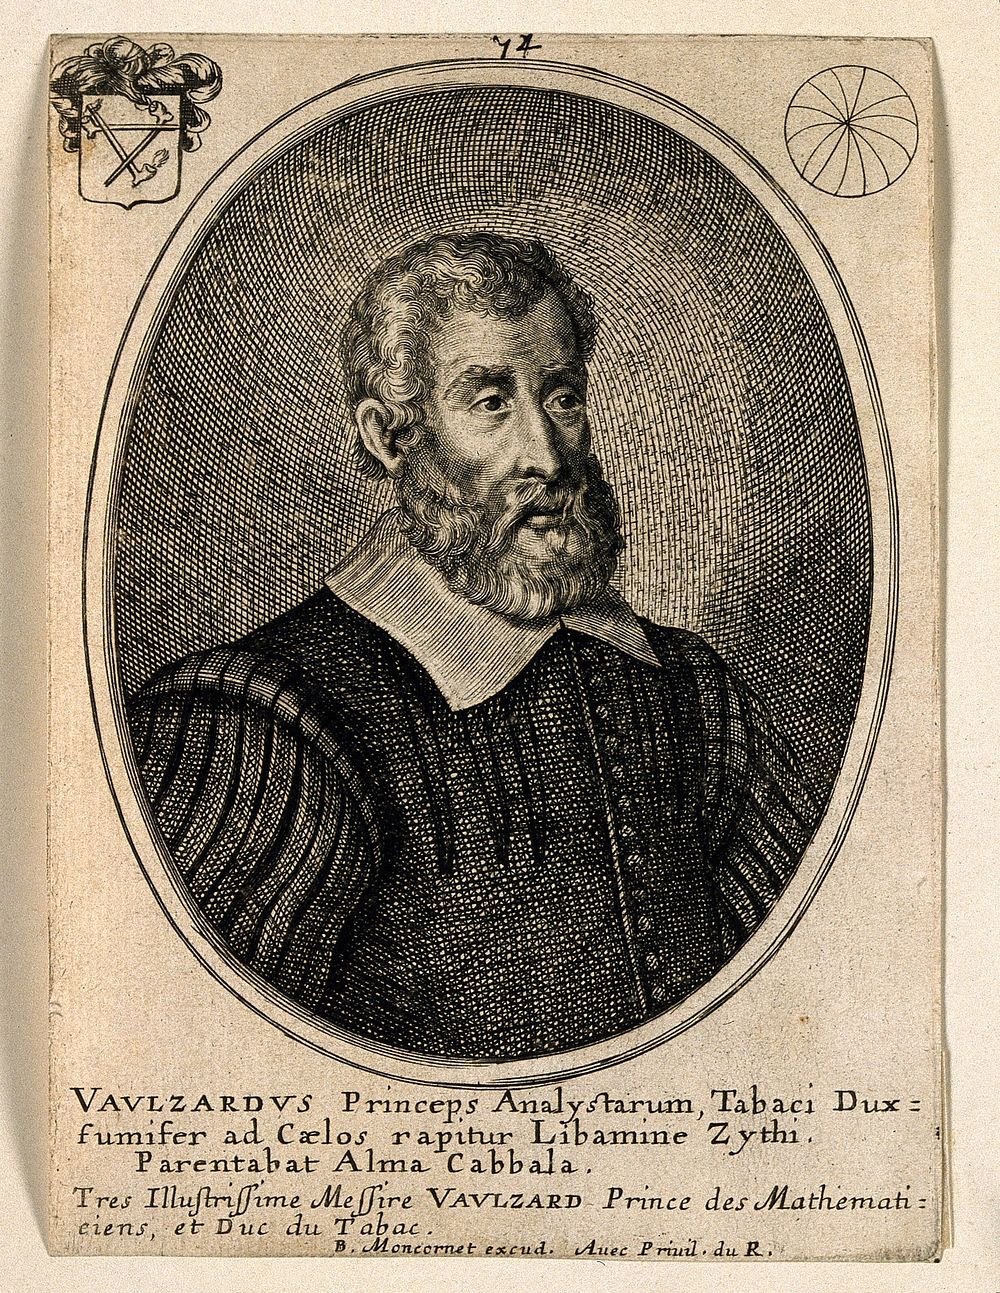 Jean-Louis de Vaulézard. Line engraving by B. Moncornet.